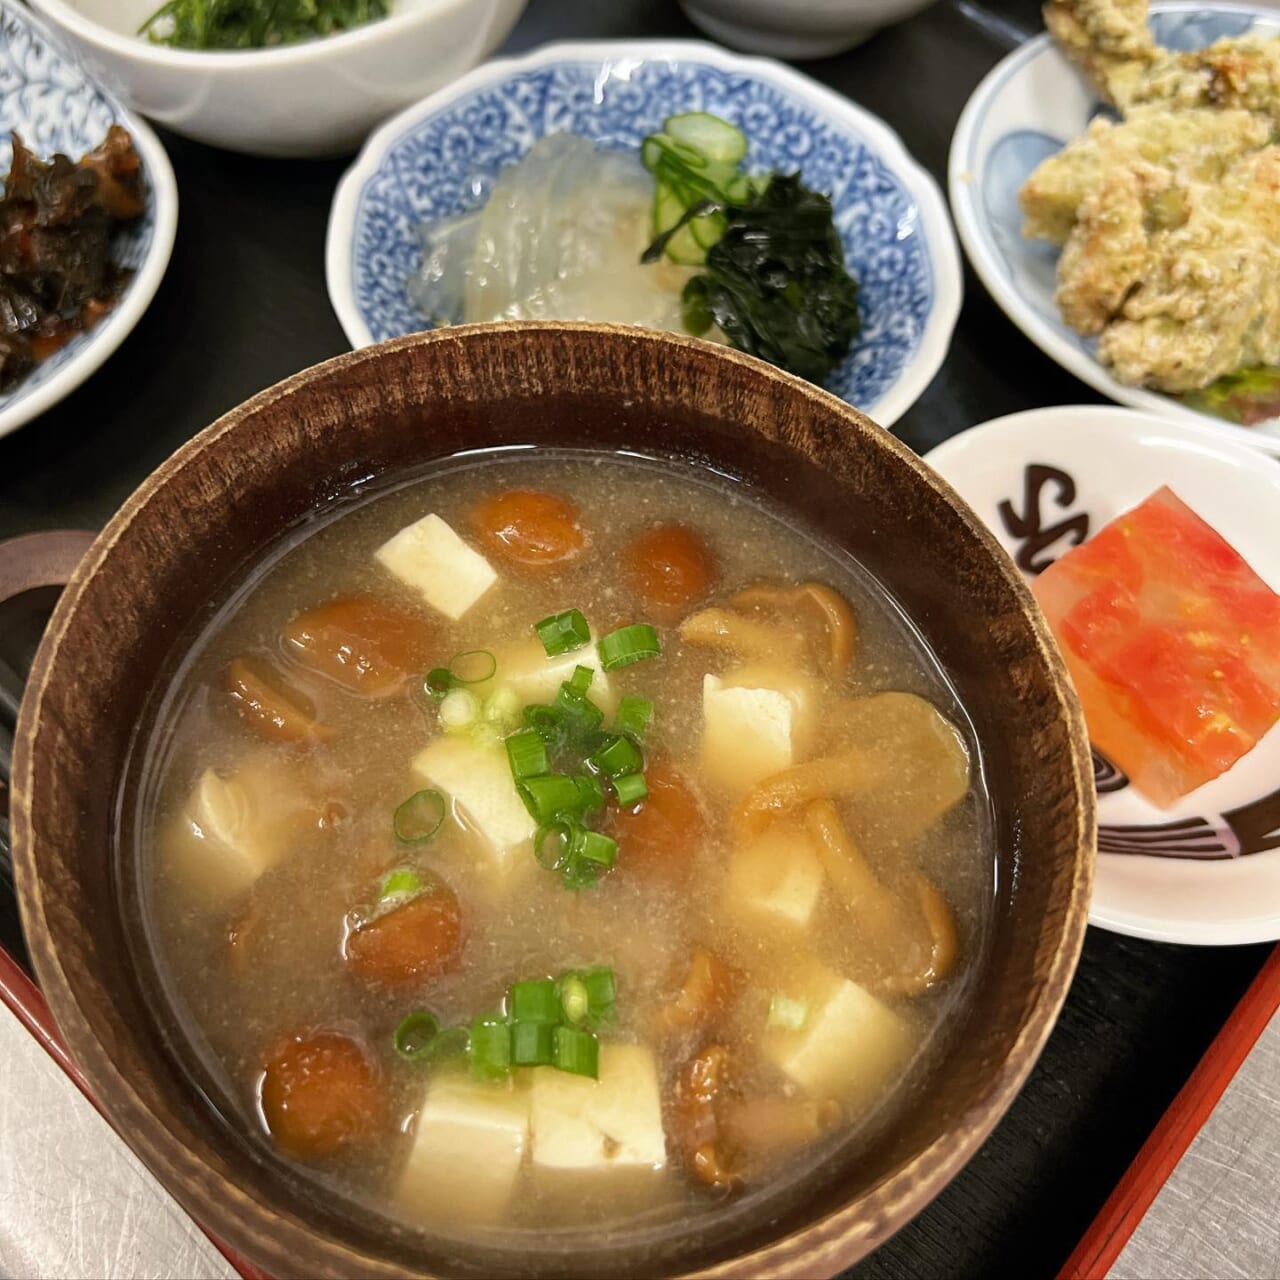 7月の季節のランチ
ヤマキチ膳
今月も鮭川村くまちゃんなめこの味噌汁
ぷりぷりで大好評です！

今日も美味しく
どちら様も楽しい週末を♪